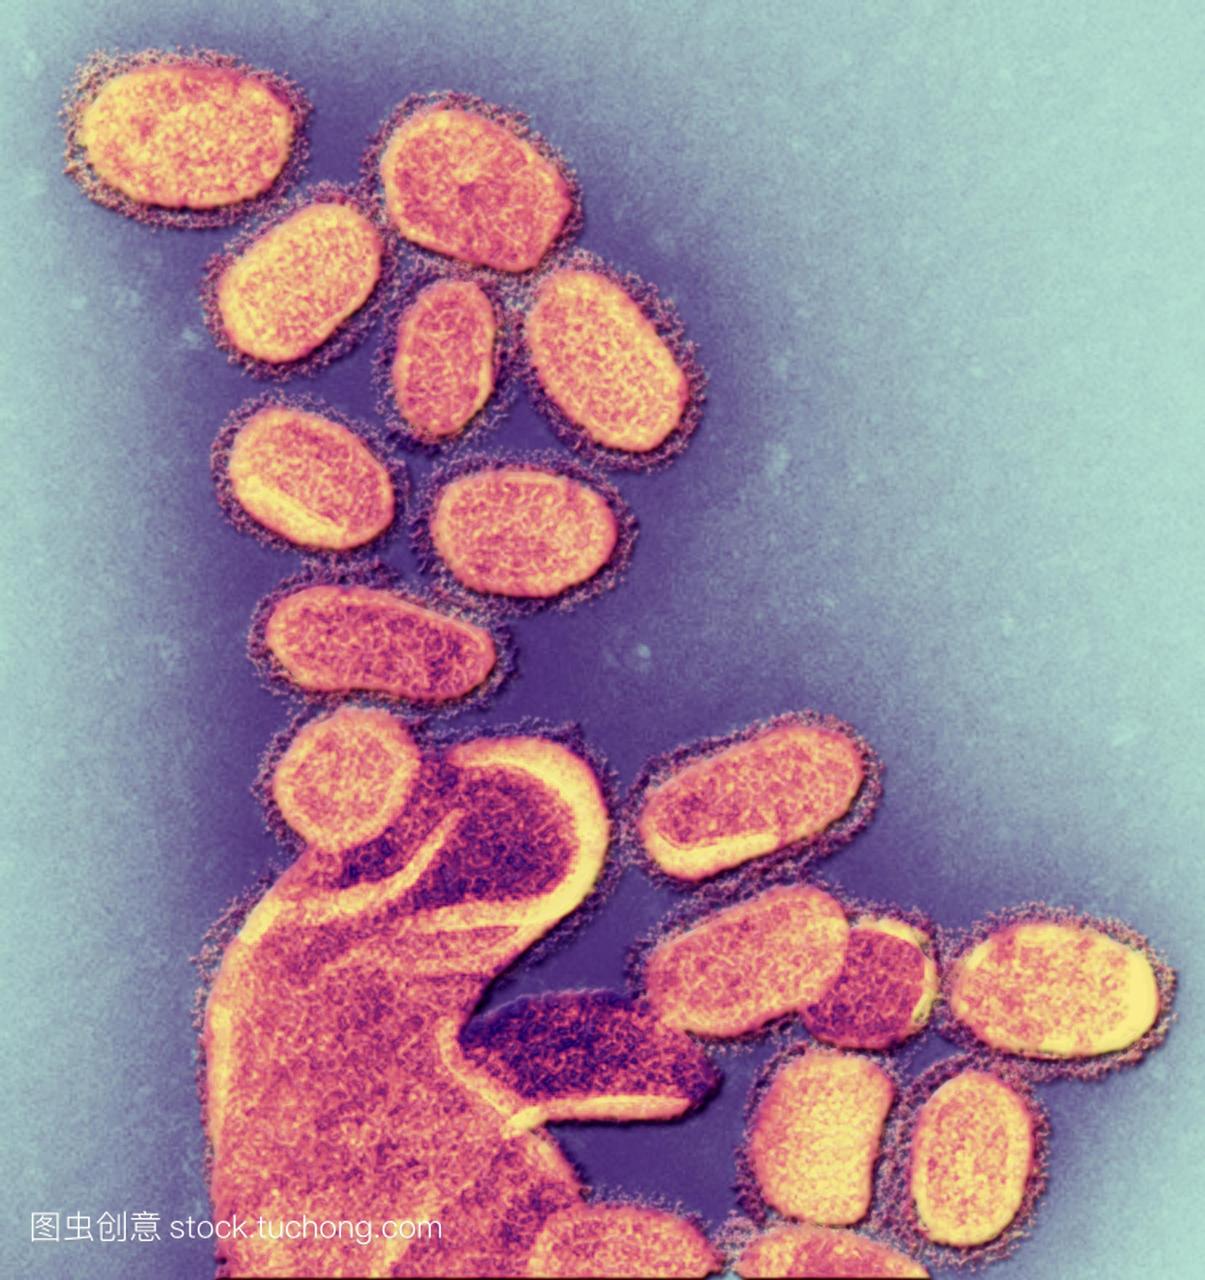 1918年h1n1流感病毒粒子,彩色透射电子显微照